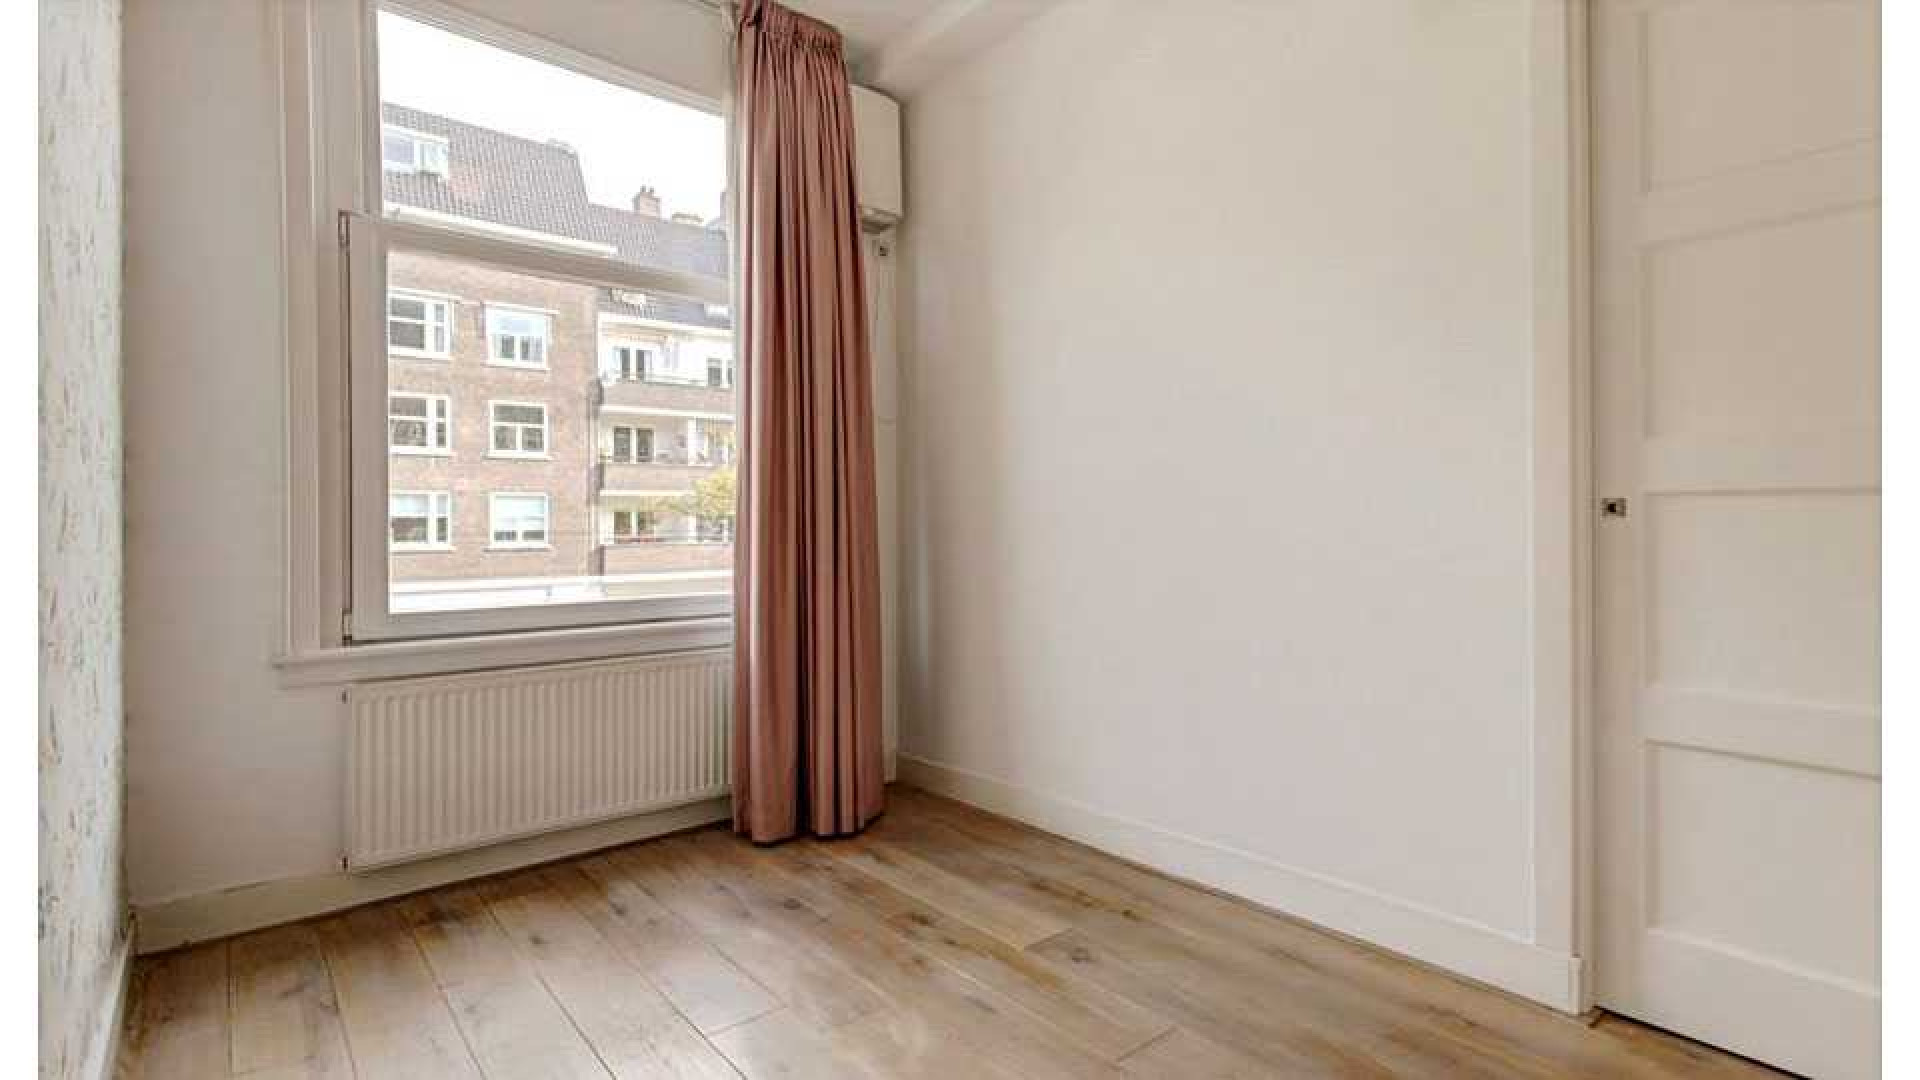 Eva Jinek koopt luxe appartement in Amsterdam Zuid. Zie foto's 7